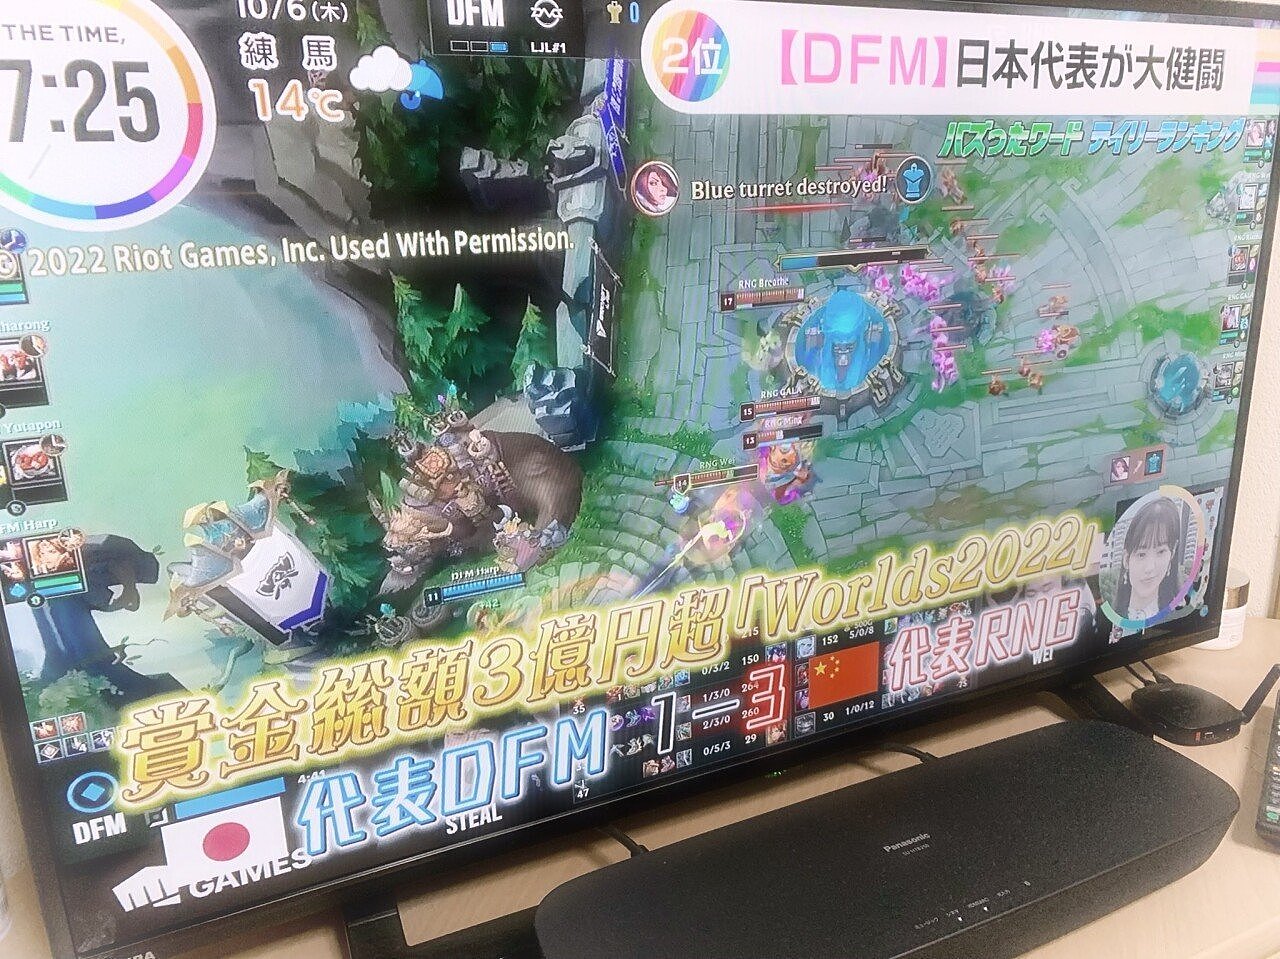 输了也上电视？入围赛DFM不敌RNG资讯 出现在日本早间新闻中 - 1